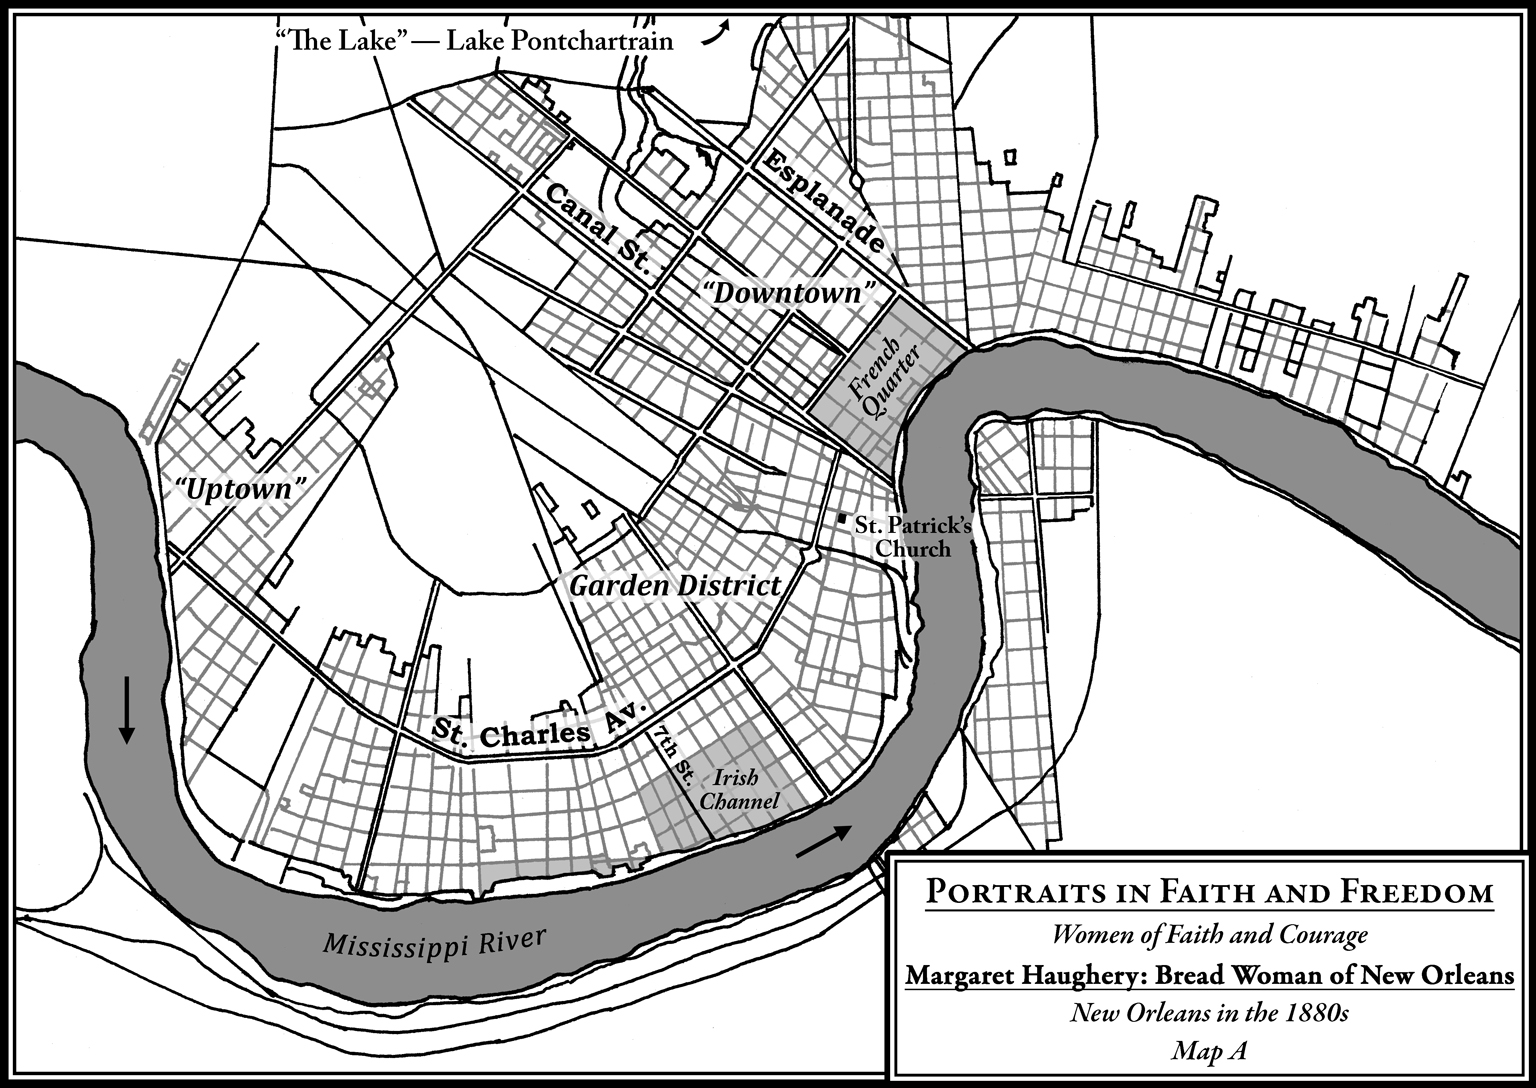 Margaret Haughery Map 1